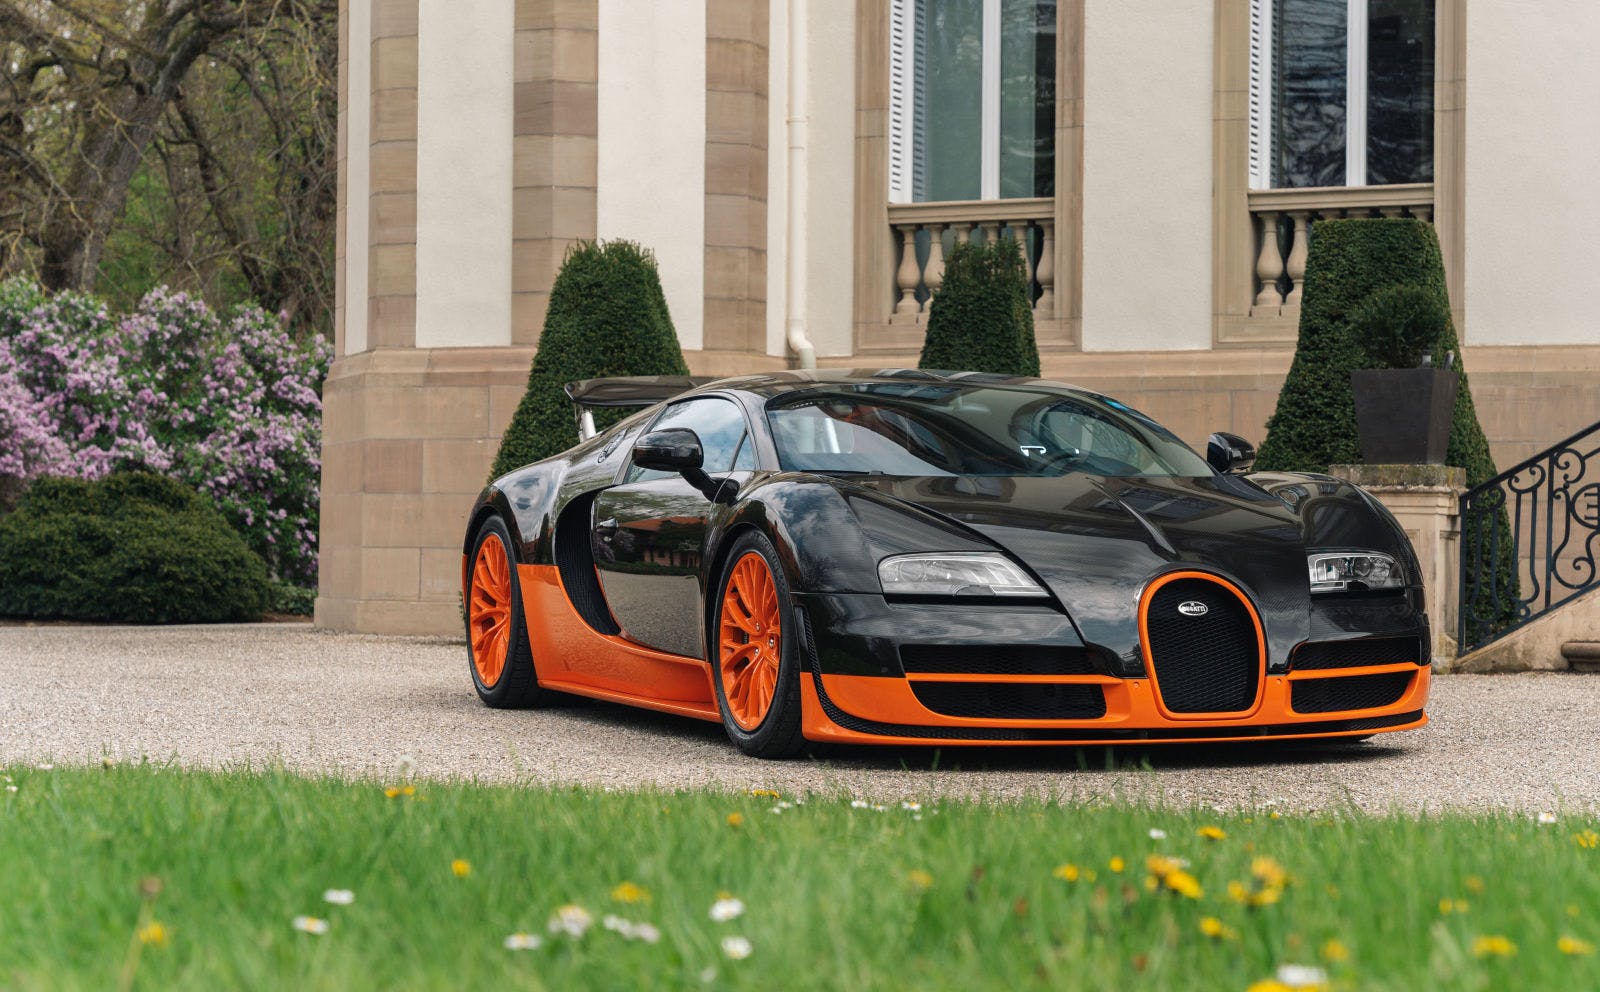 La Bugatti Veyron 16.4 Super Sport, record du monde de vitesse en 2010 enregistré à 431,07 km/h.
